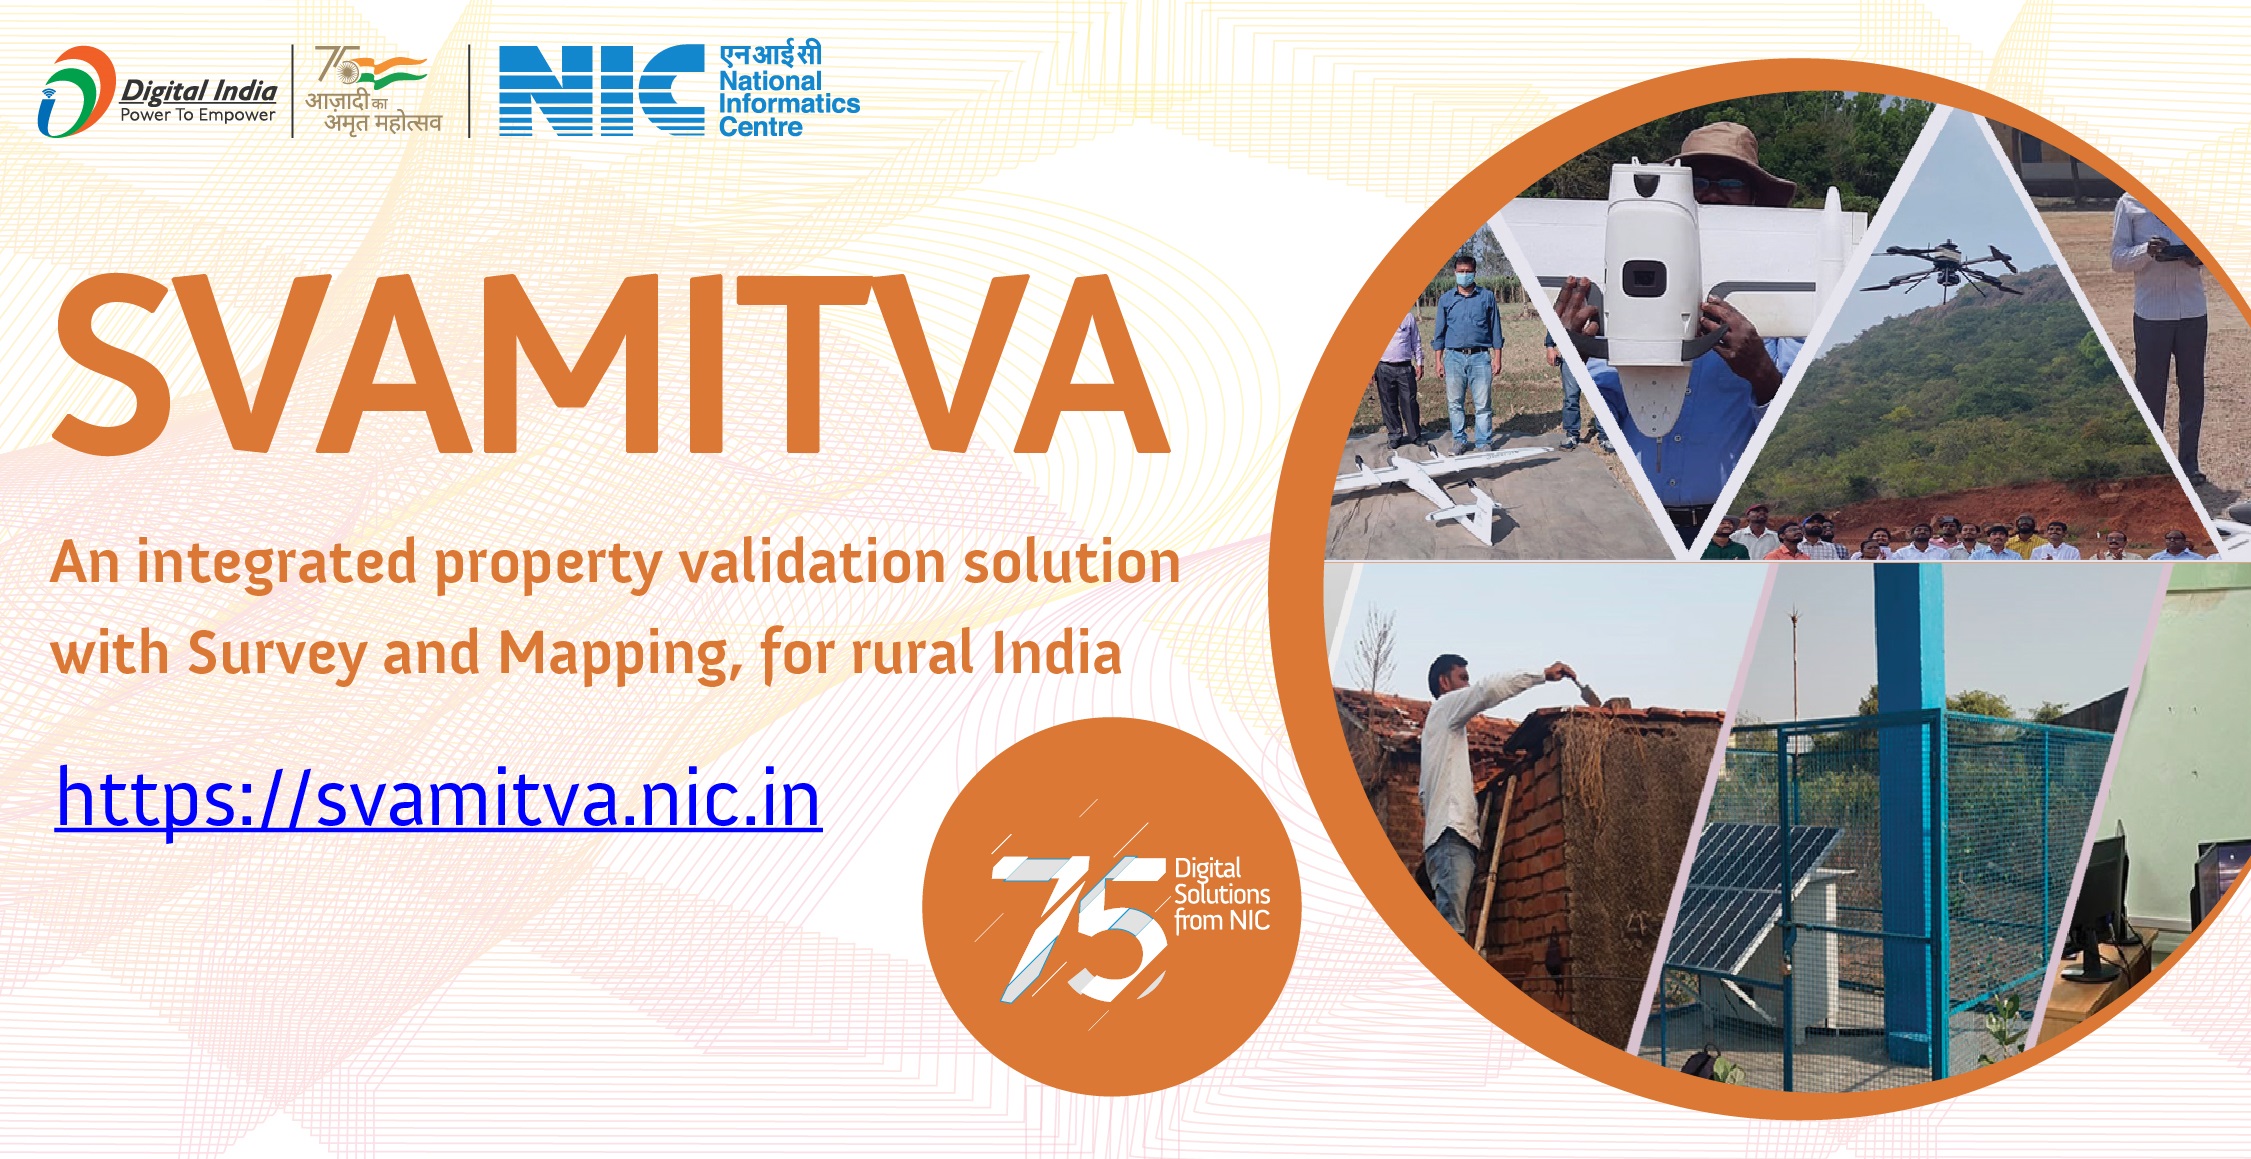 SVAMITVA - ग्रामीण भारत के लिए एक एकीकृत संपत्ति सत्यापन समाधान और उन्हें उनकी आवासीय संपत्तियों के रेकॉर्ड्स ऑफ राइट के साथ सशक्त बनाता है